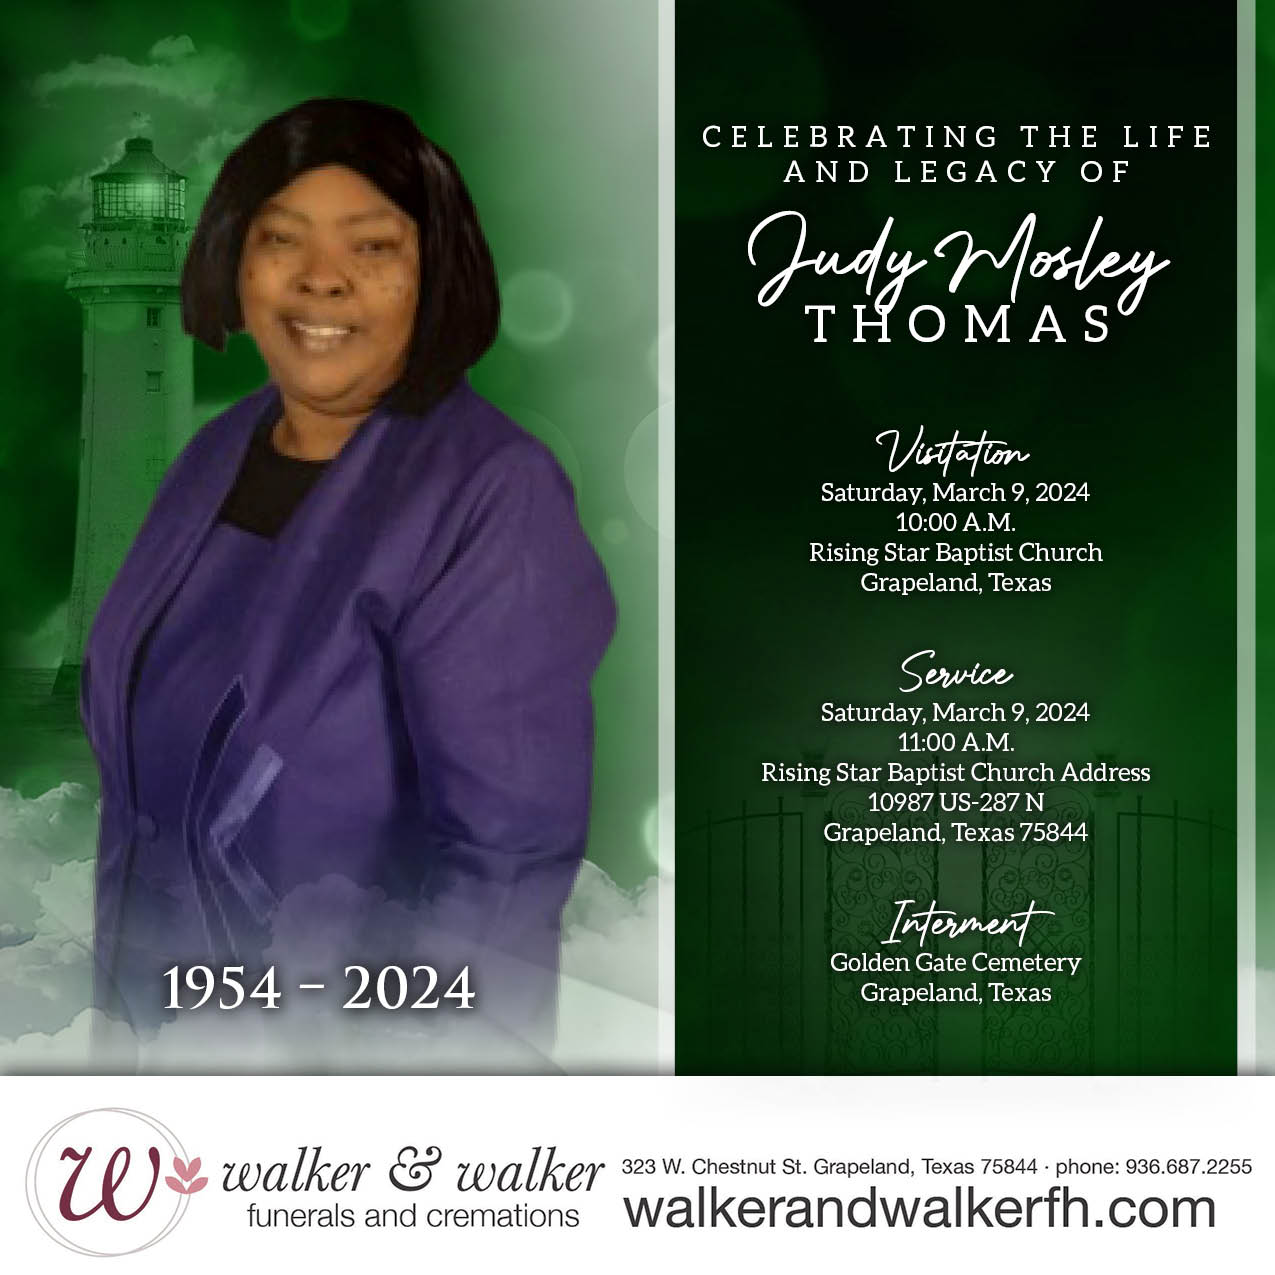 Walker & Walker Funerals and Cremations 323 W Chestnut St, Grapeland Texas 75844